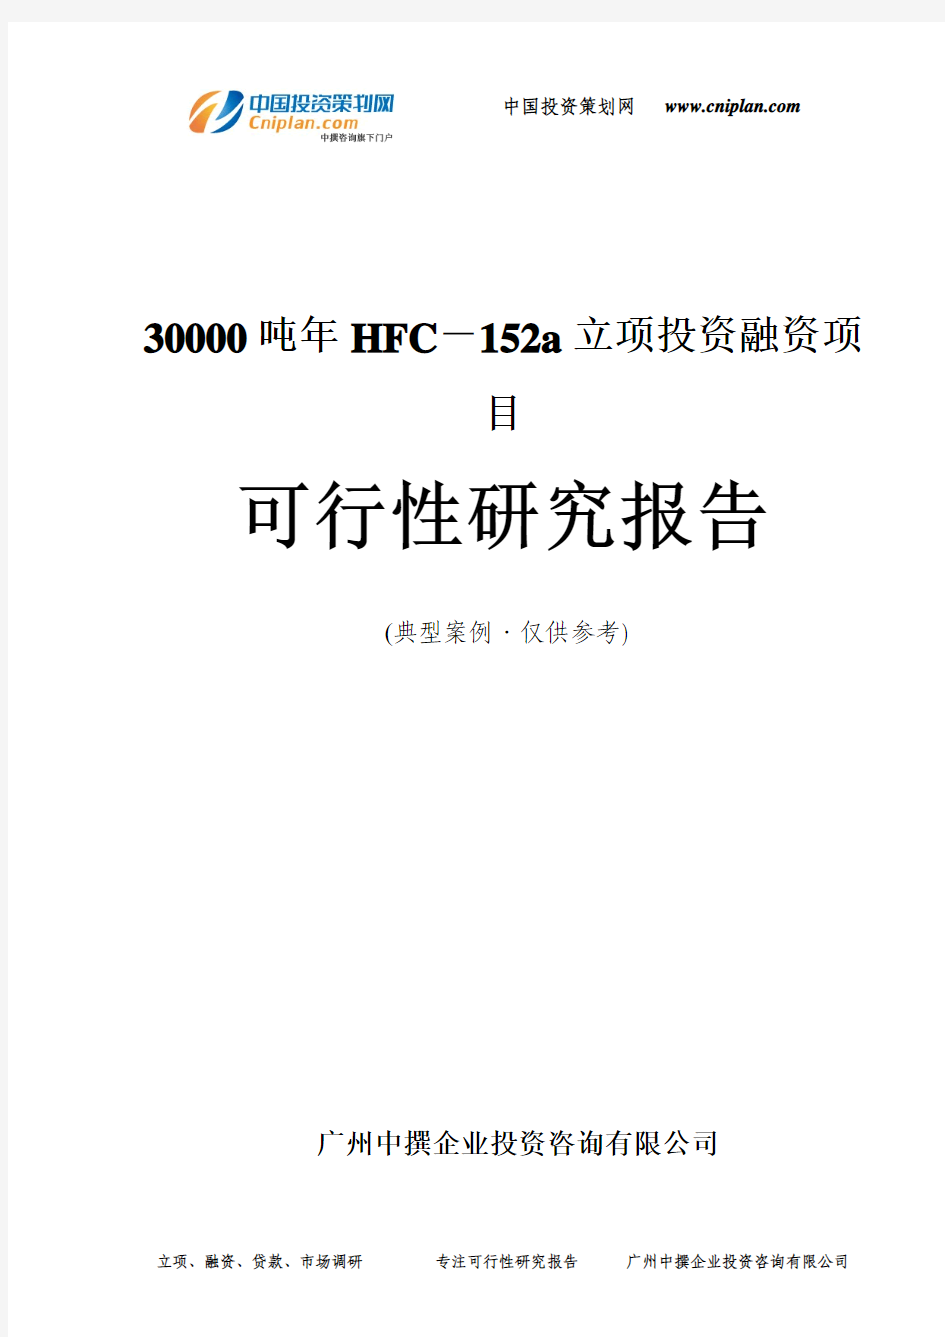 30000吨年HFC-152a融资投资立项项目可行性研究报告(中撰咨询)